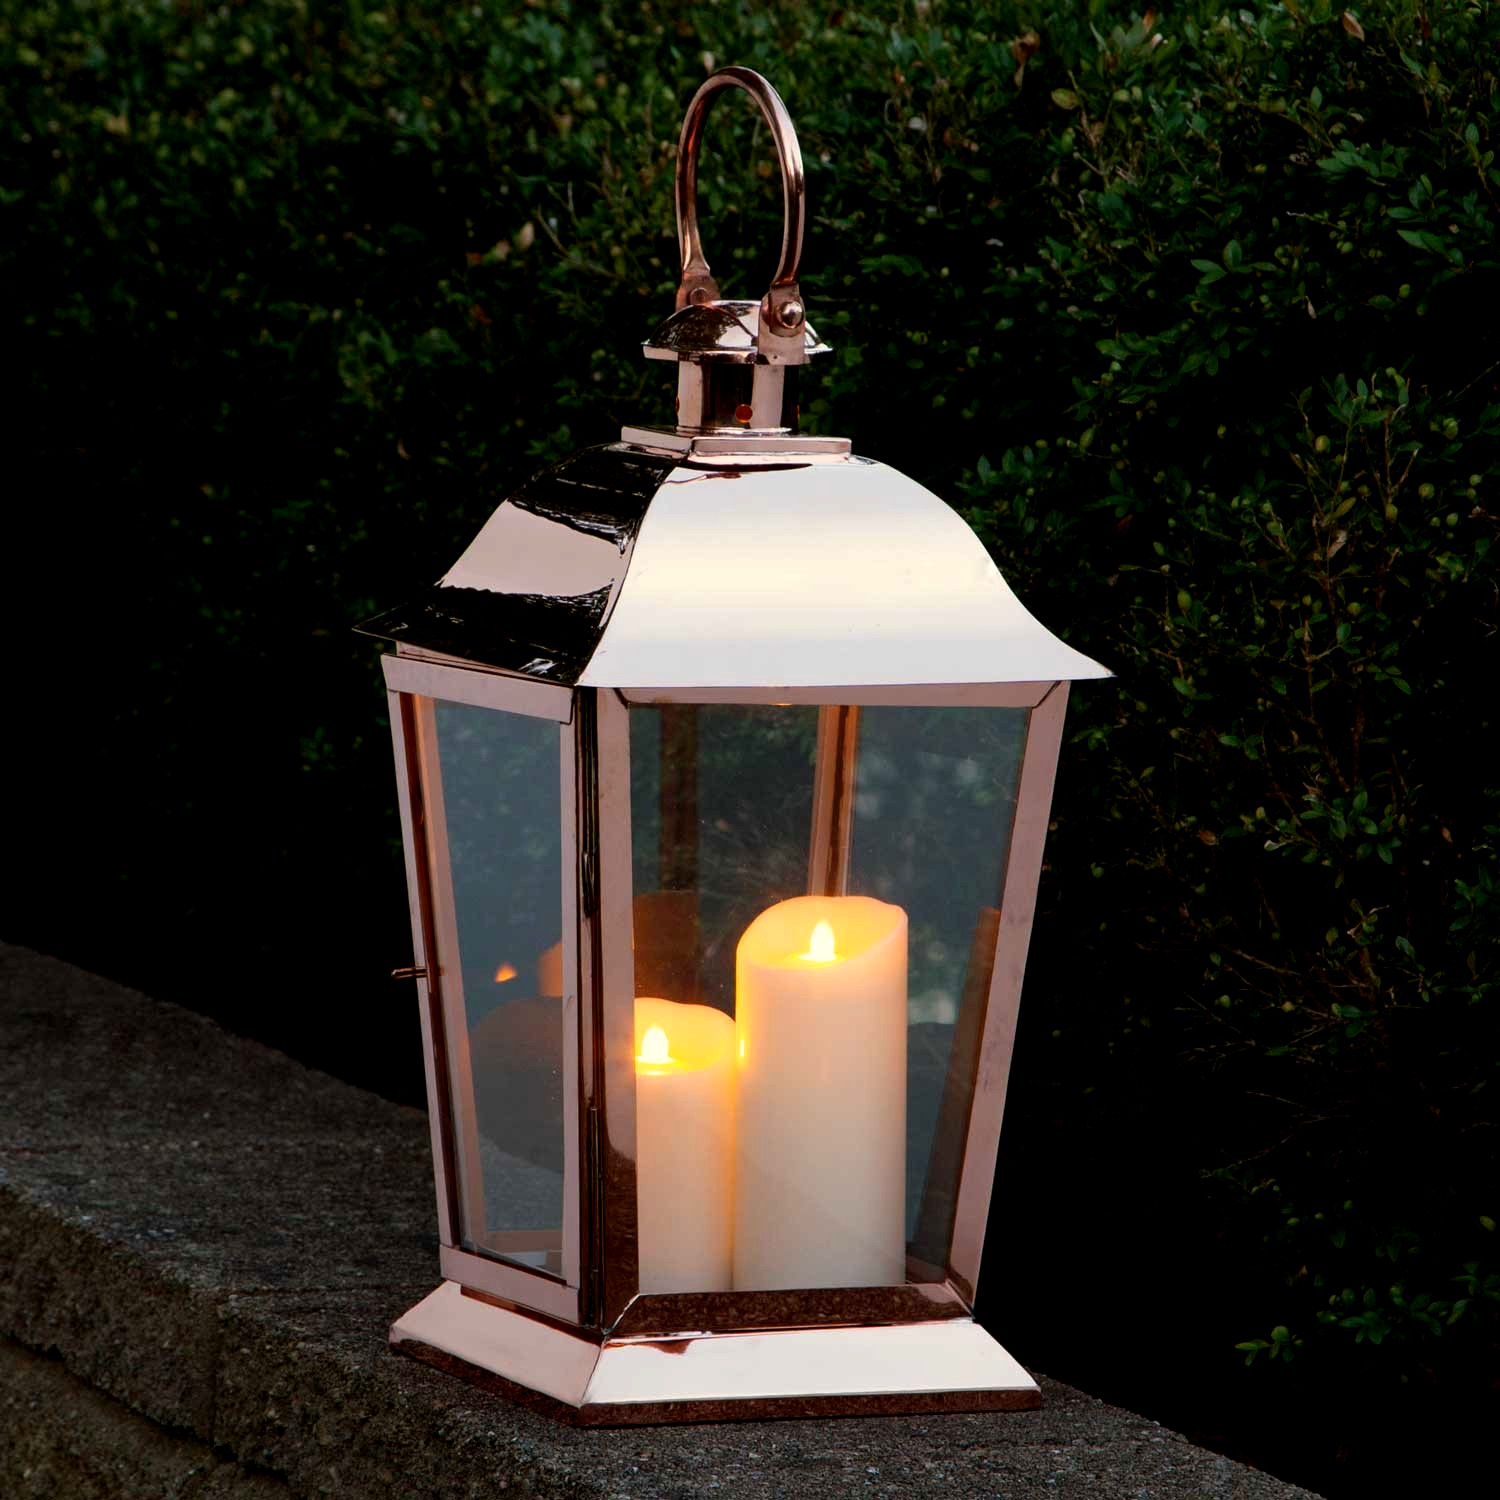 Garden Candle Lanterns | Home Design Gallery Ideas